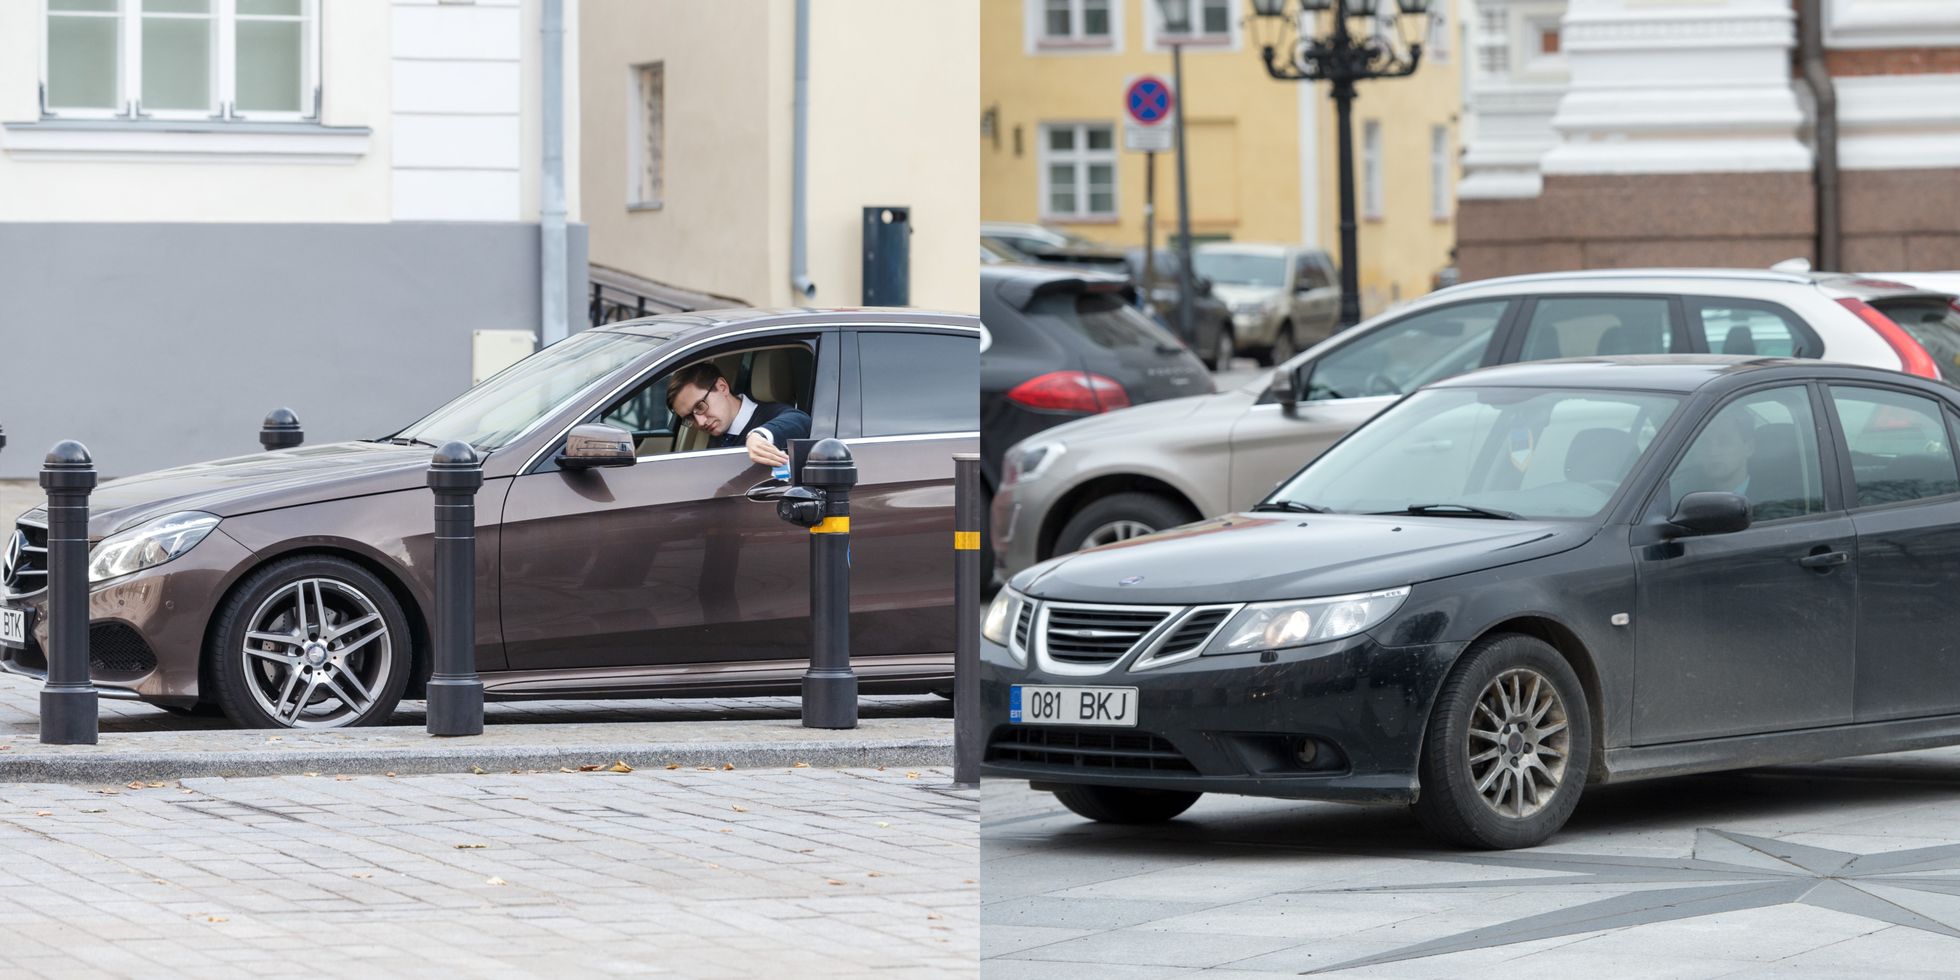 Jaak Madisoni autod: Mercedes-Benz E-klass (vasakul), foto: Konstantin Sednev 2018. 2008. aasta Saab (paremal), foto: Tairo Lutter 2015.